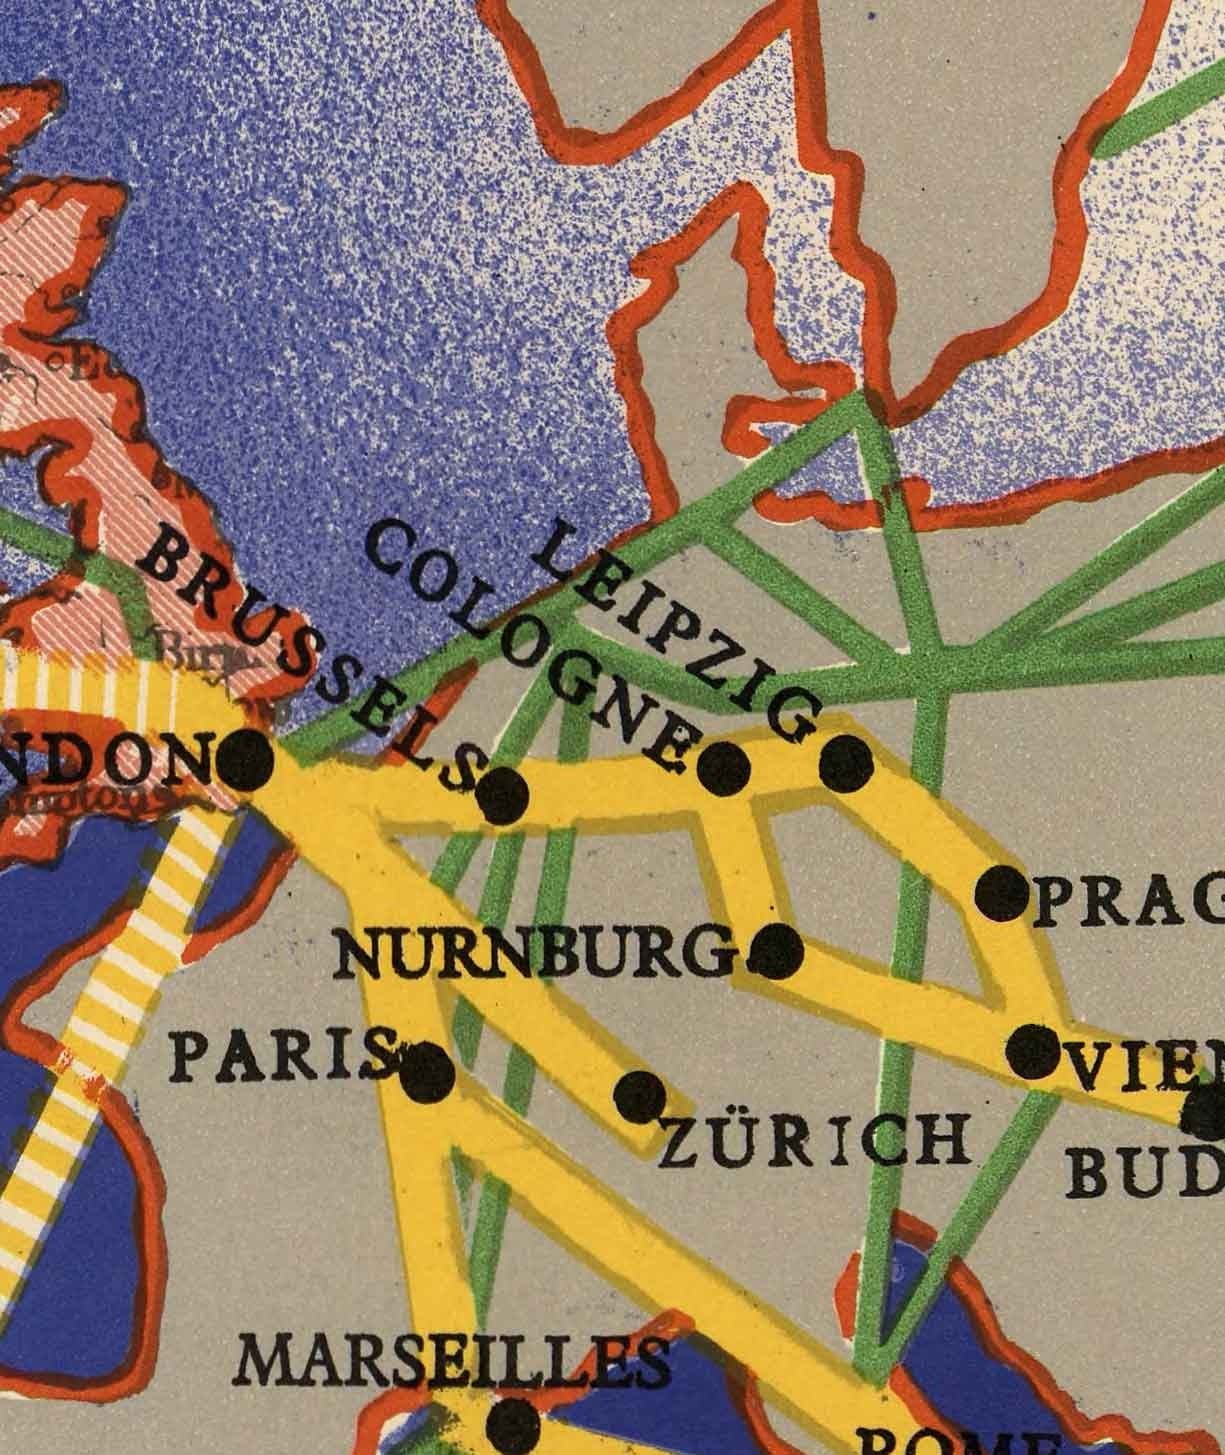 Mapa mundial de Imperial Airways, 1937 - Mapa antiguo del Imperio Británico de Laszlo Moholy-Nagy - Rutas aéreas de largo recorrido